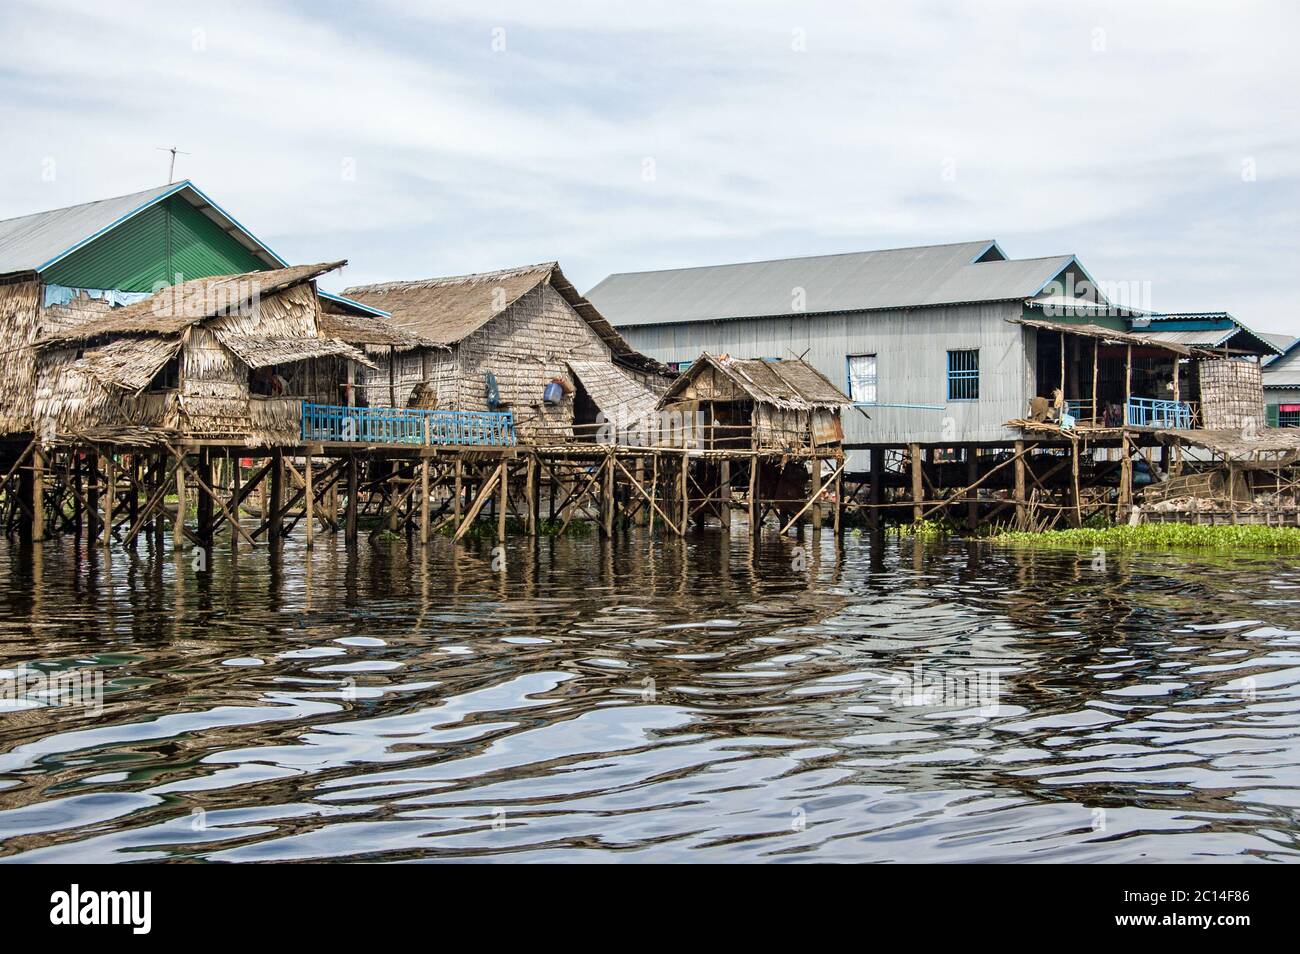 Dorfhäuser bei Kampong Phluk am Tonle SAP See bei Siem Reap, Kambodscha. Stockfoto